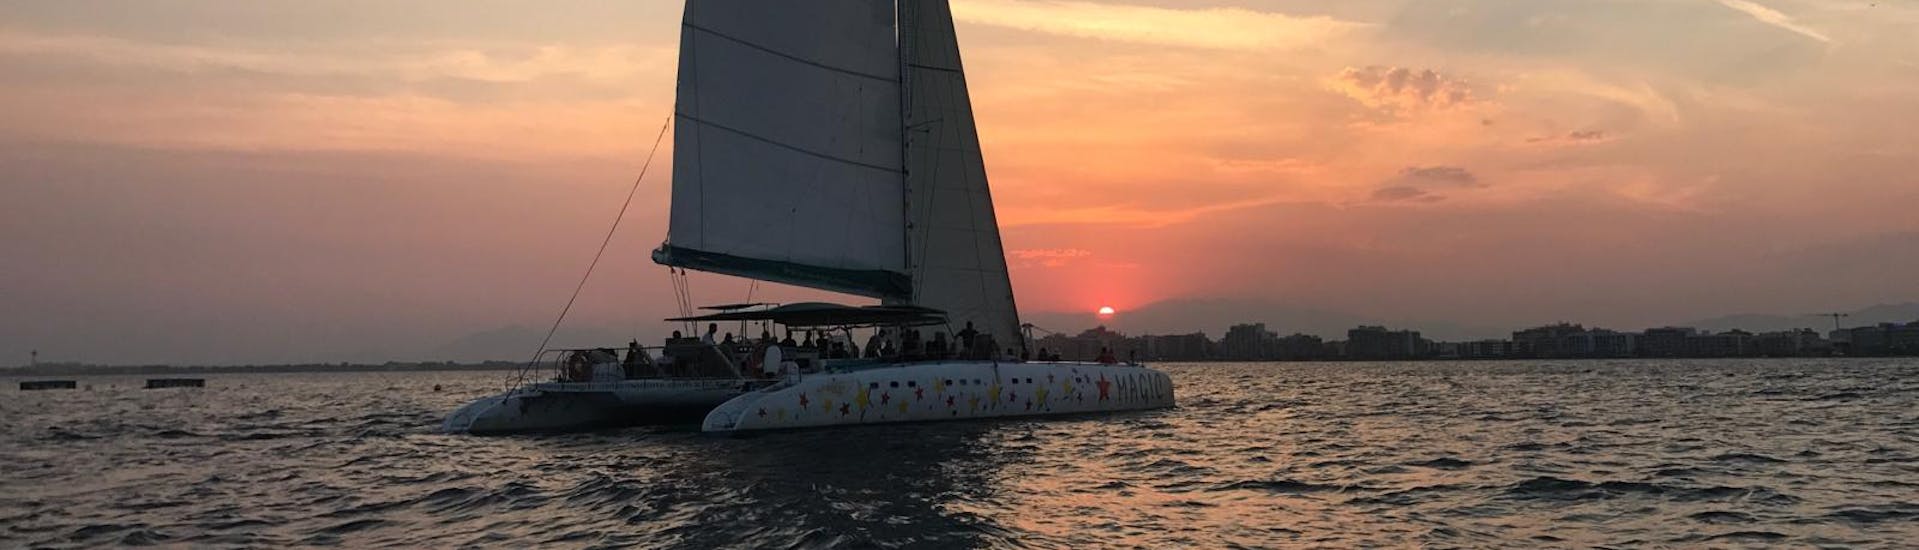 Balade en catamaran au coucher du soleil depuis Roses avec Magic Catamarans Mallorca